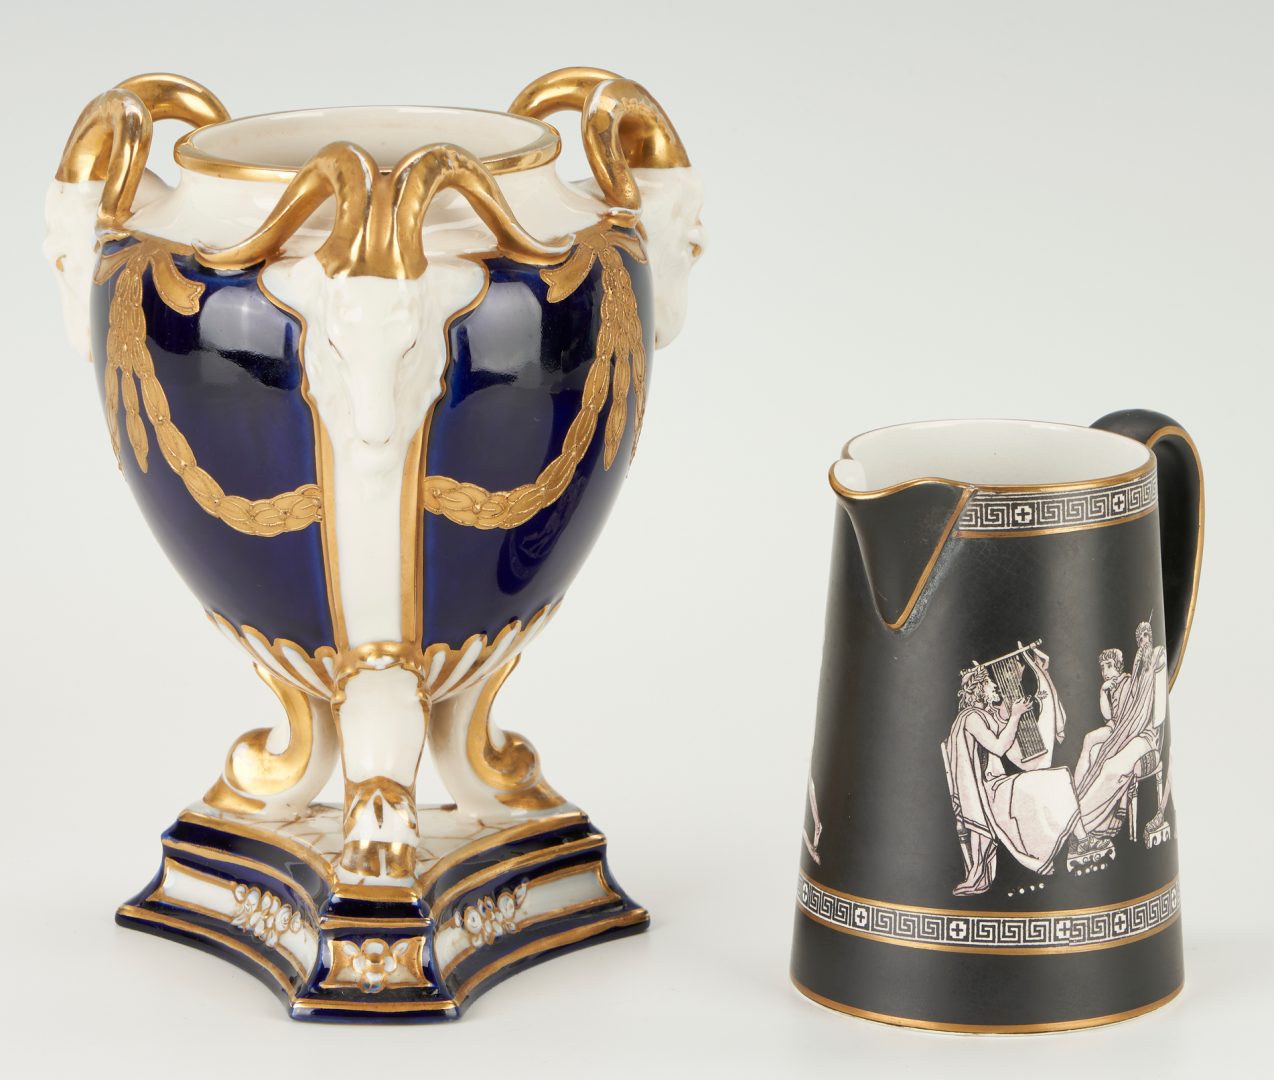 Lot 416: 6 Assorted European Porcelain Items, incl. Sevres, Royal Dux